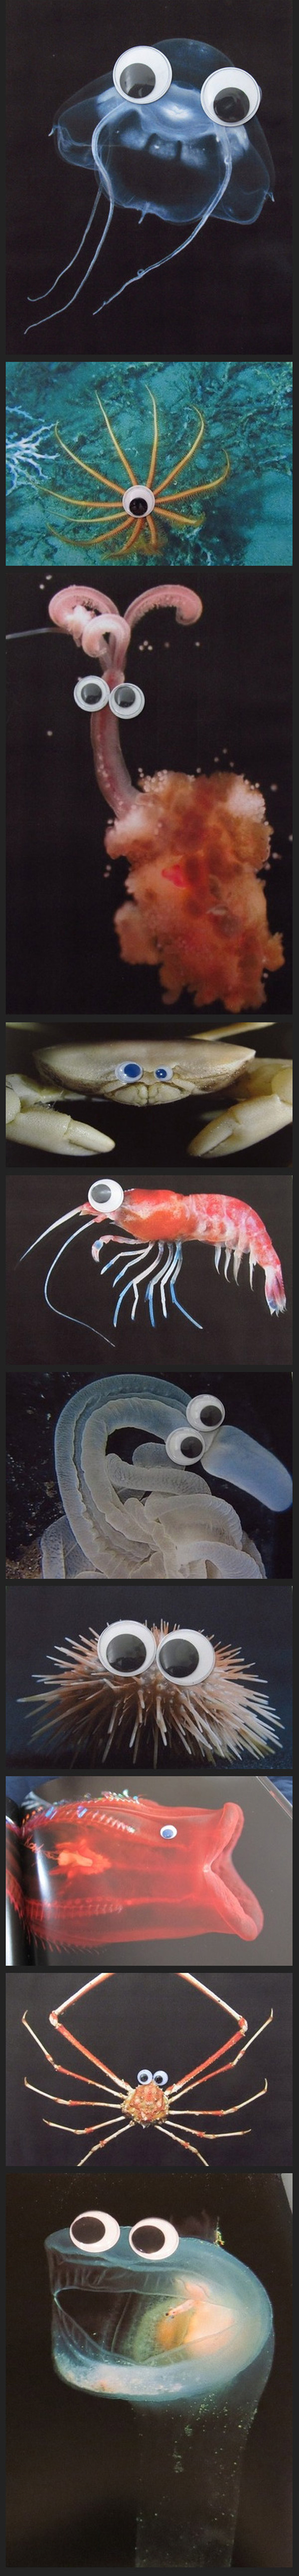 Criaturas del mar con ojos móviles